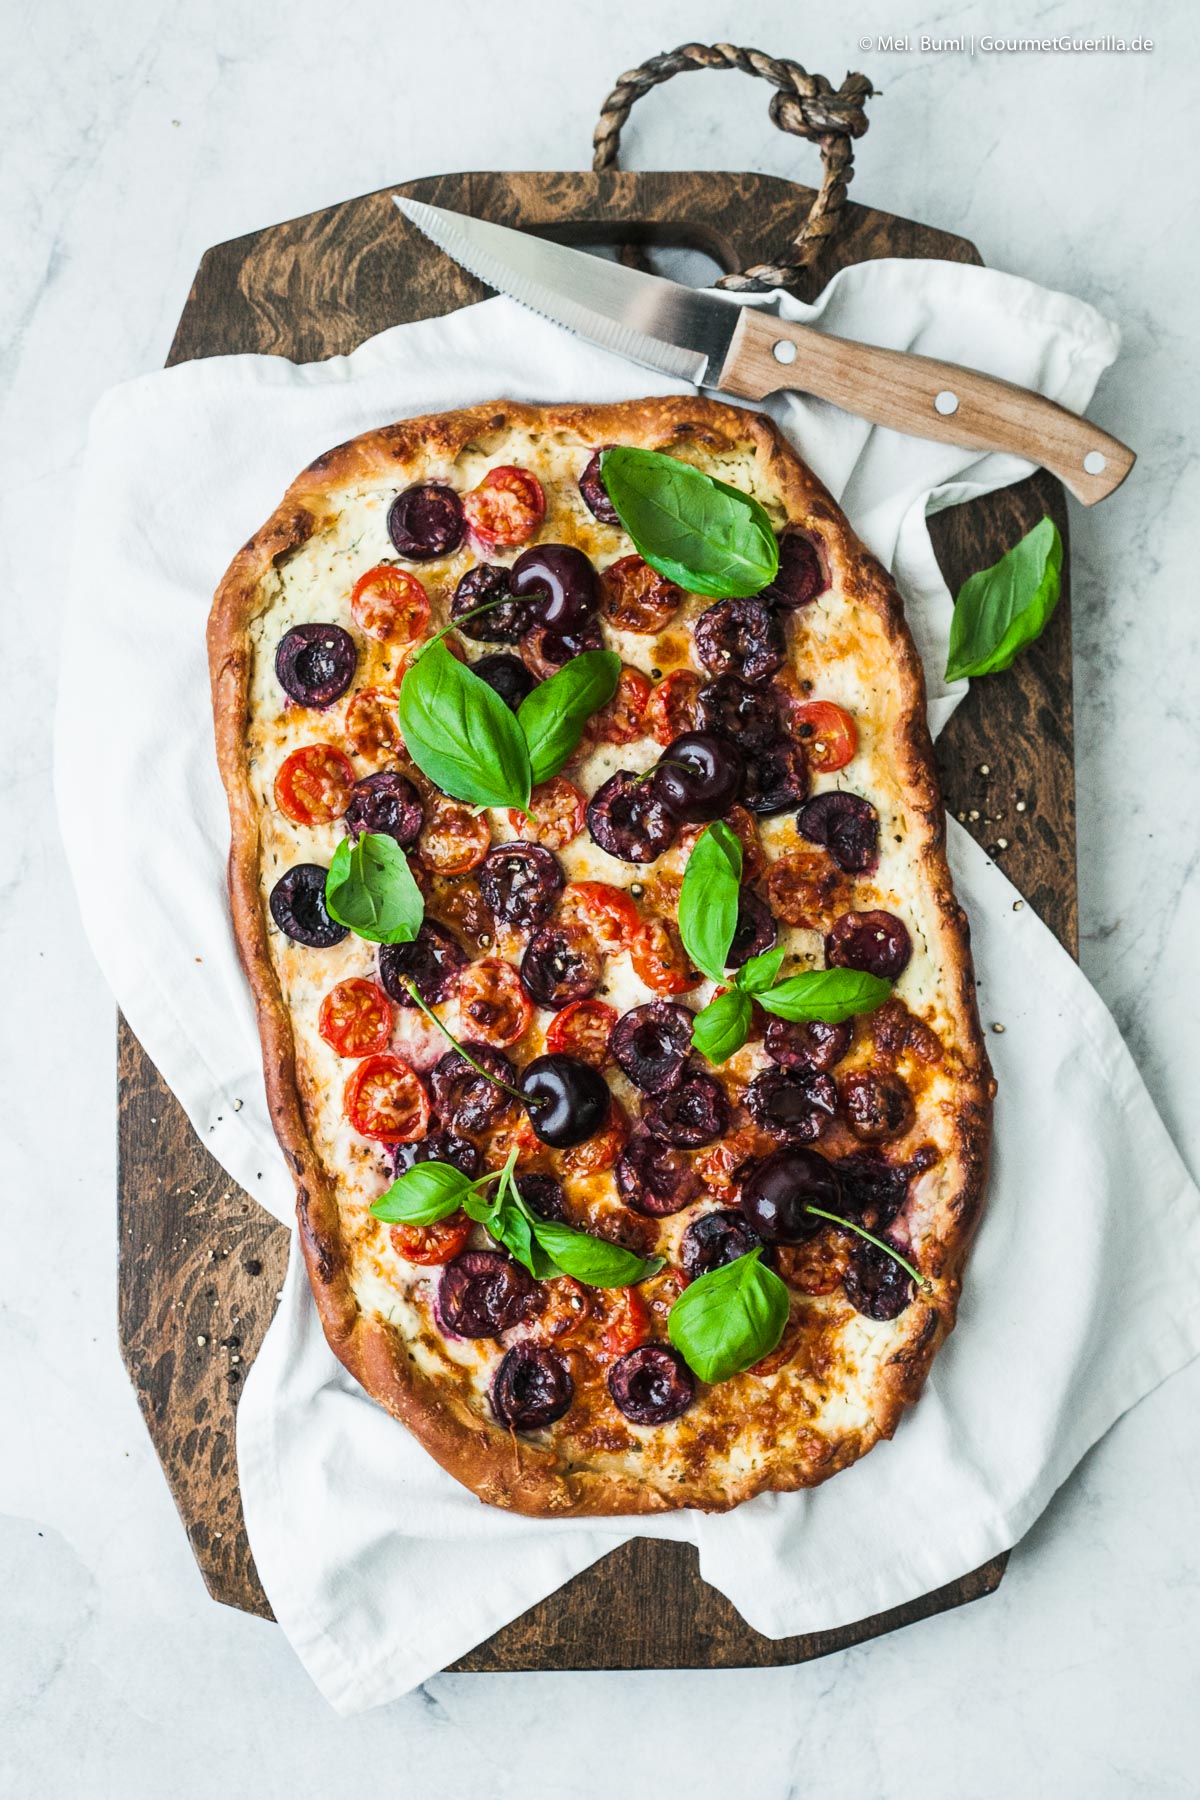 Schnelle Sommer-Pizza mit Kirschen, Tomaten und Pecorino | GourmetGuerilla.de